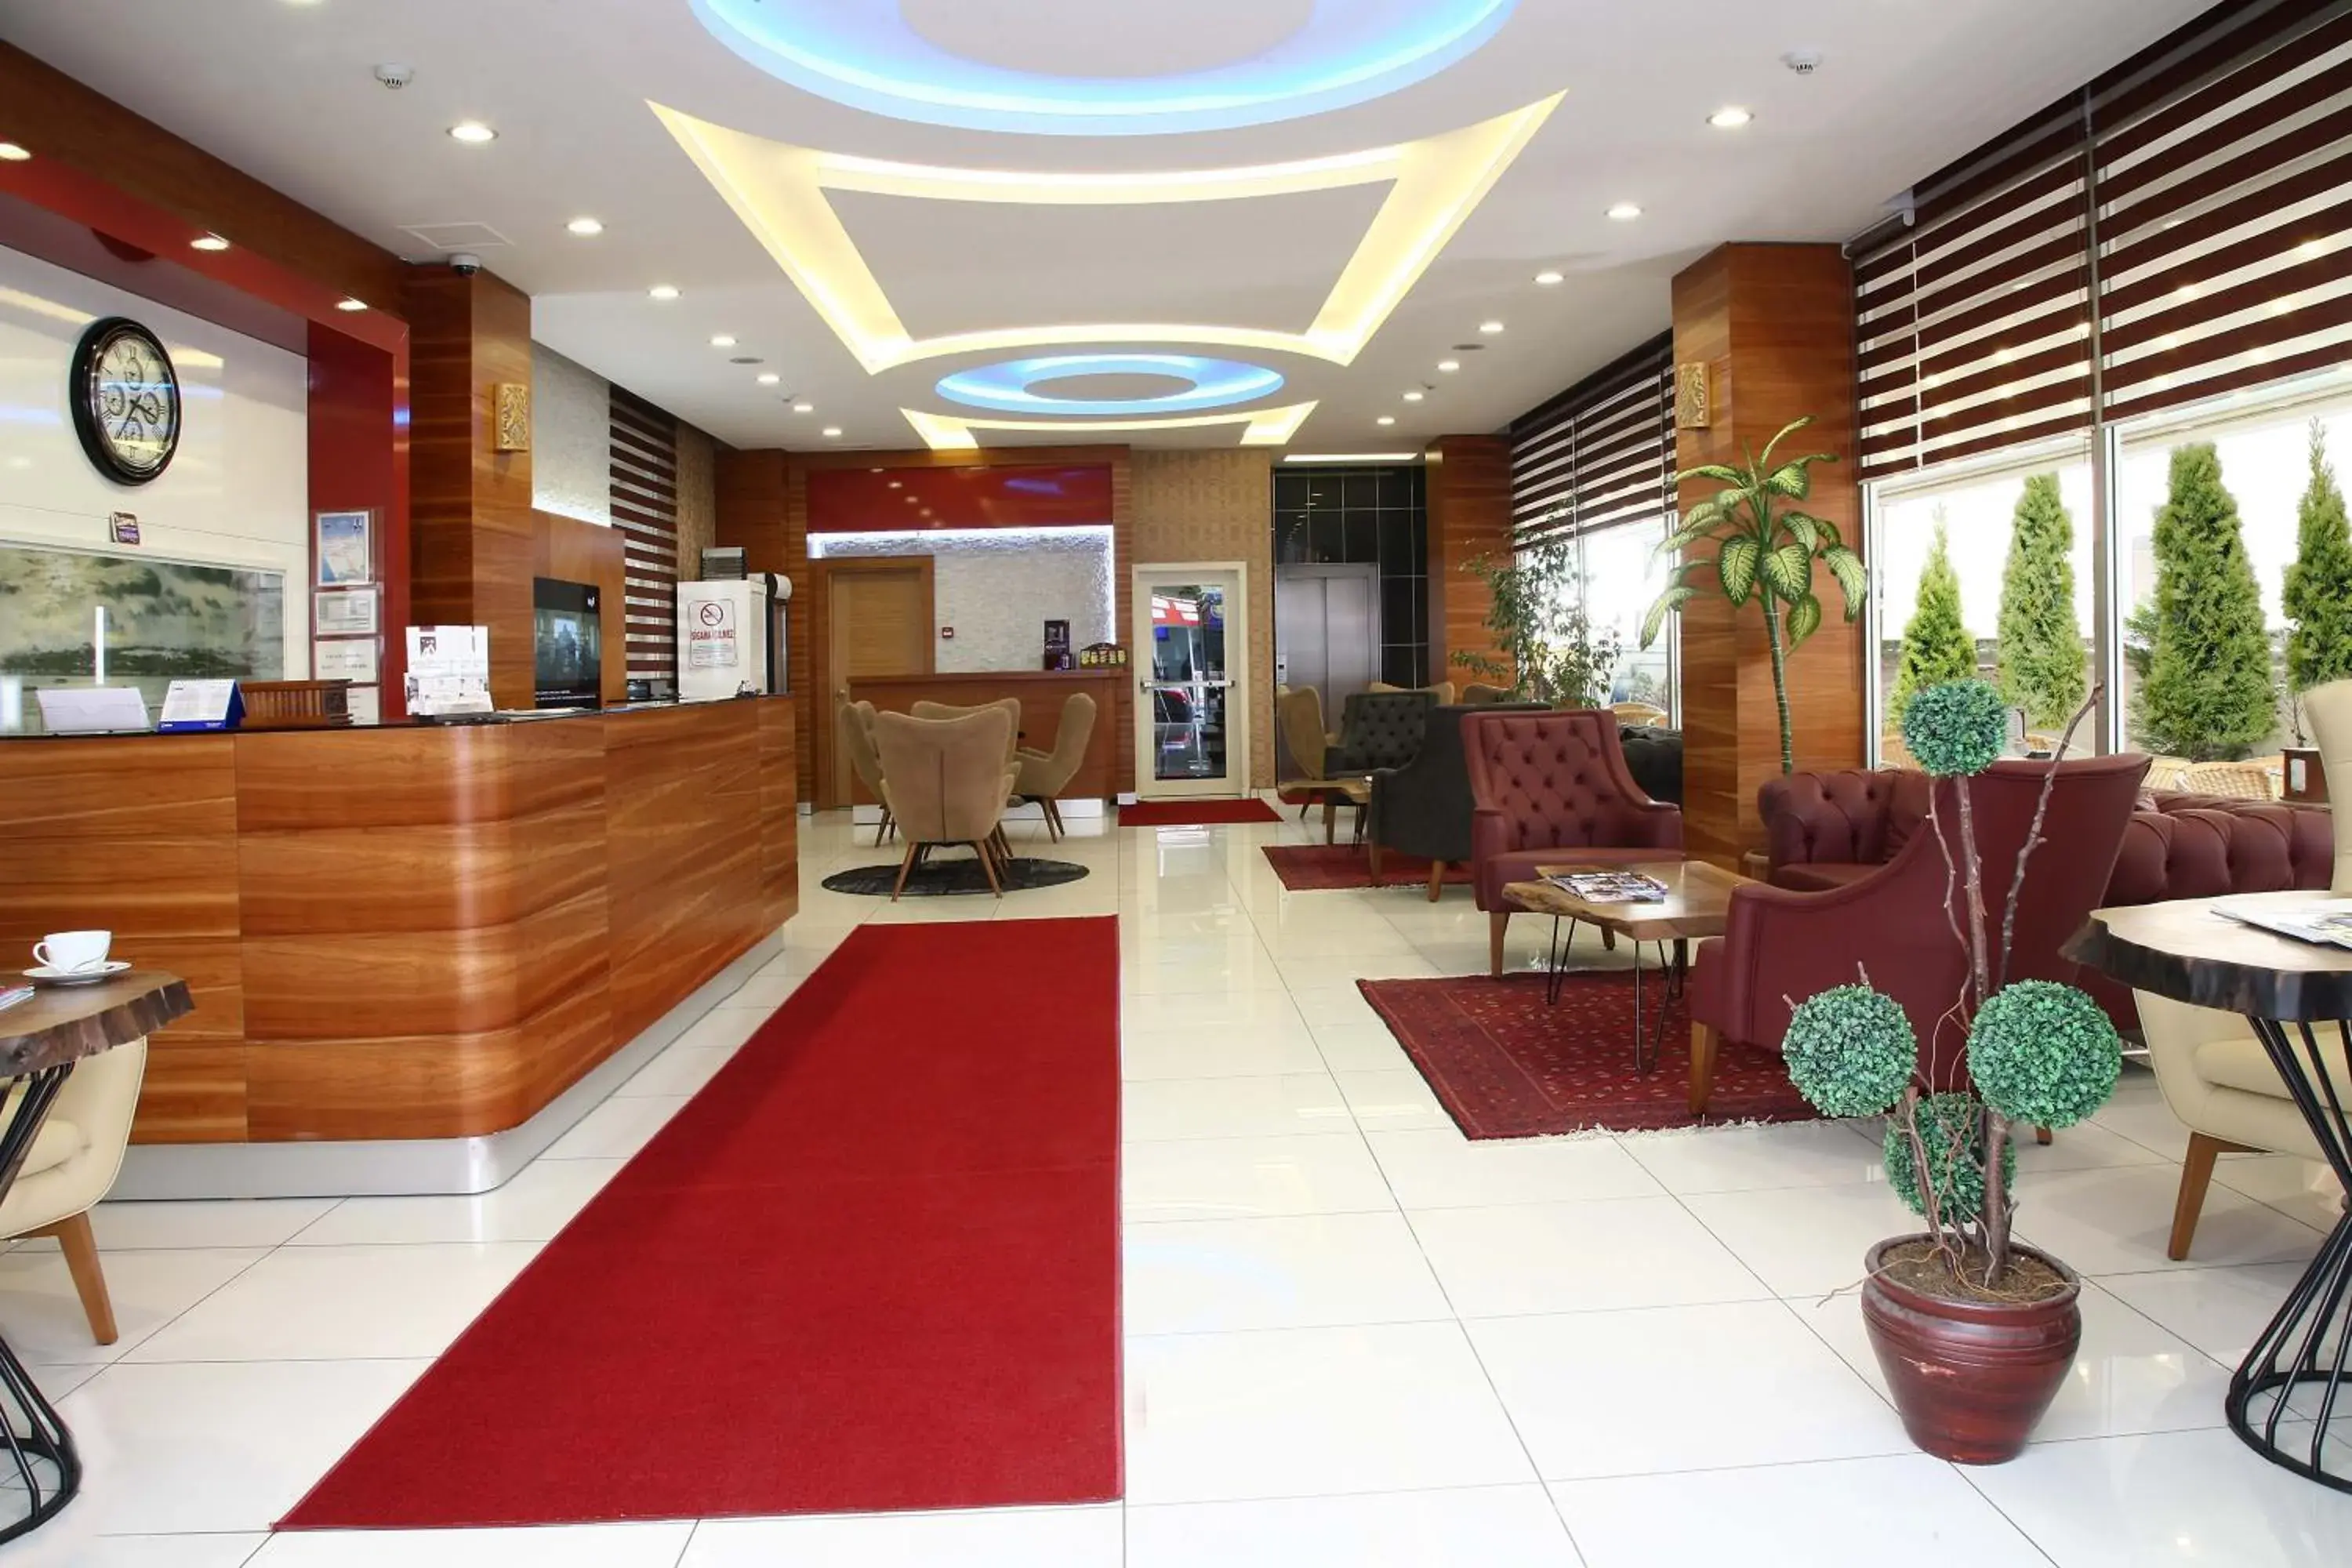 Lobby or reception, Lobby/Reception in Hotel Avcilar City